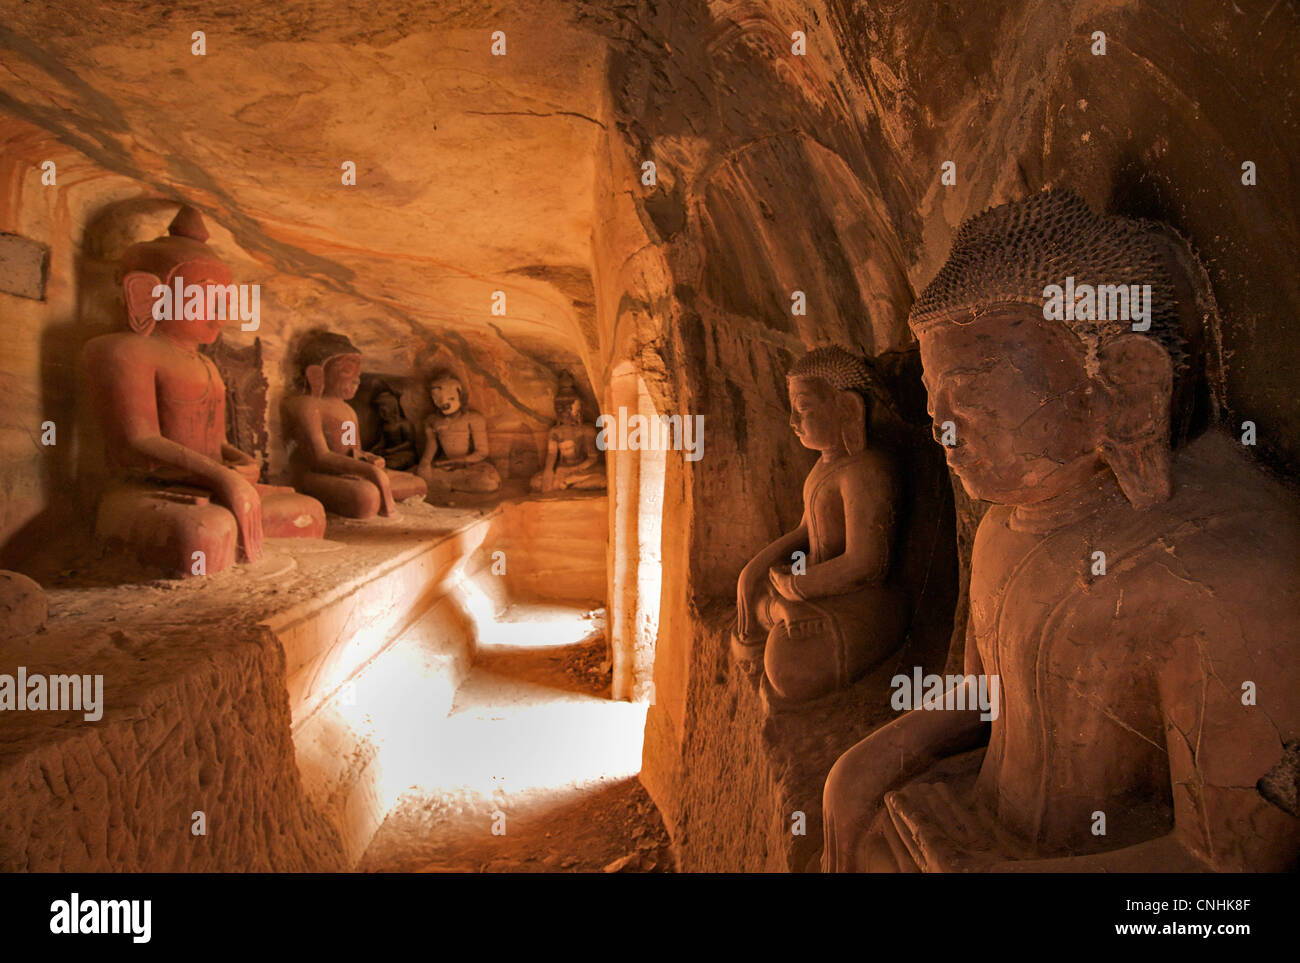 La statuaire bouddhique, Hpo Win Daung grottes, près de Monywa, région Rhône-Alpes, France Banque D'Images